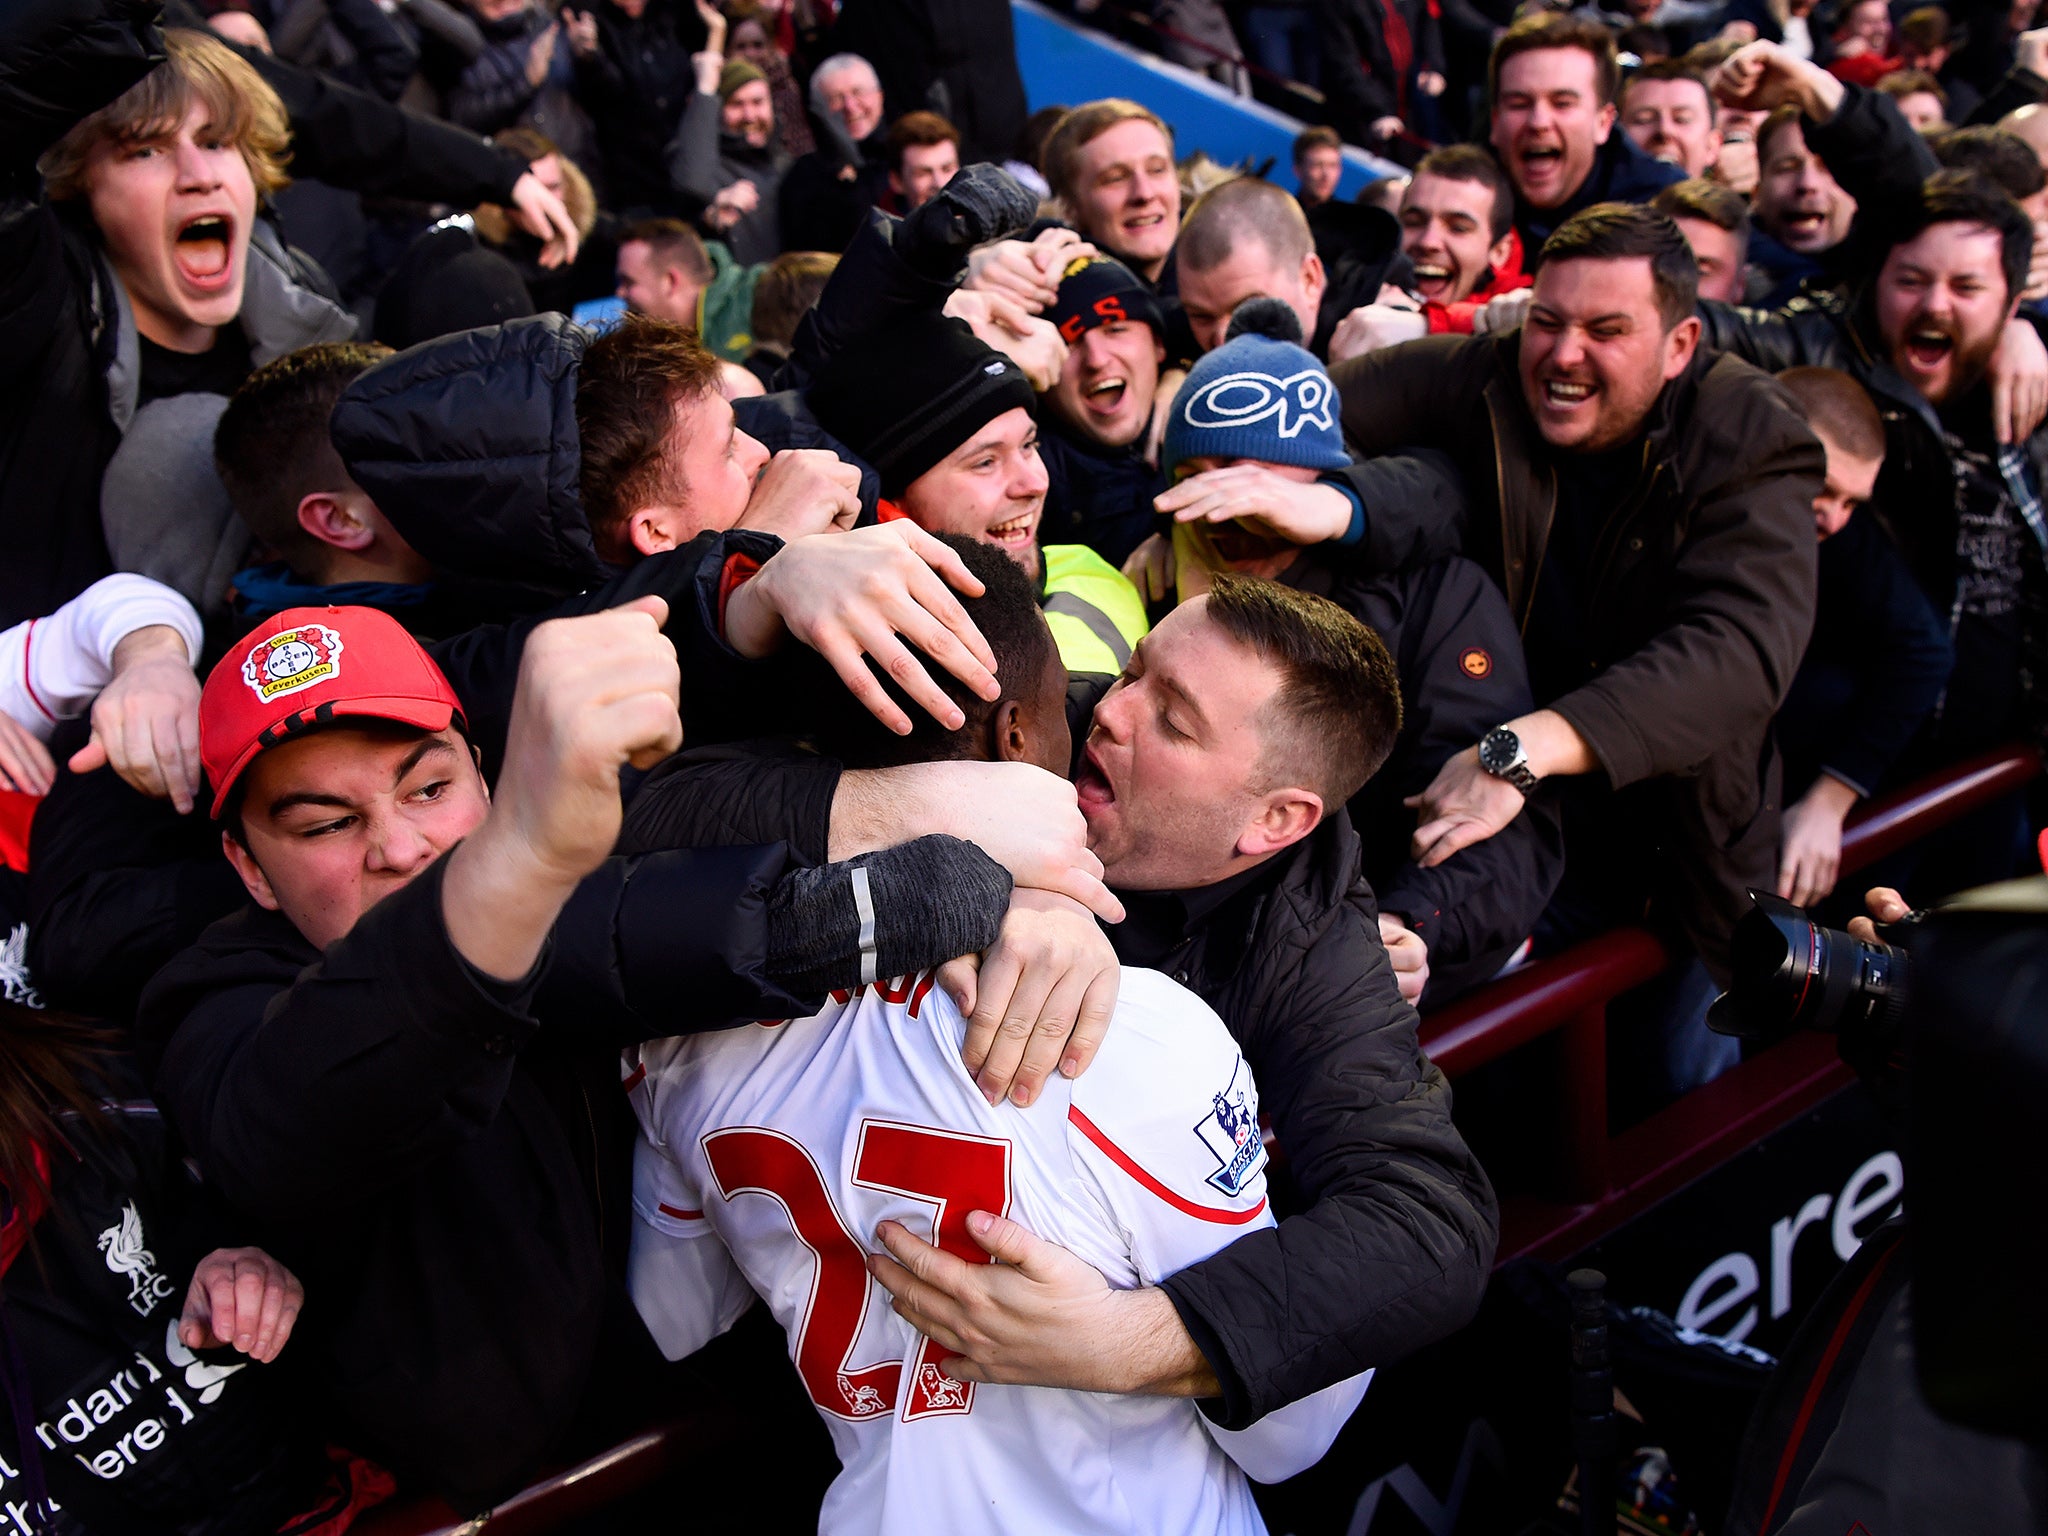 Divock Origi is embraced by an amorous Liverpool fan